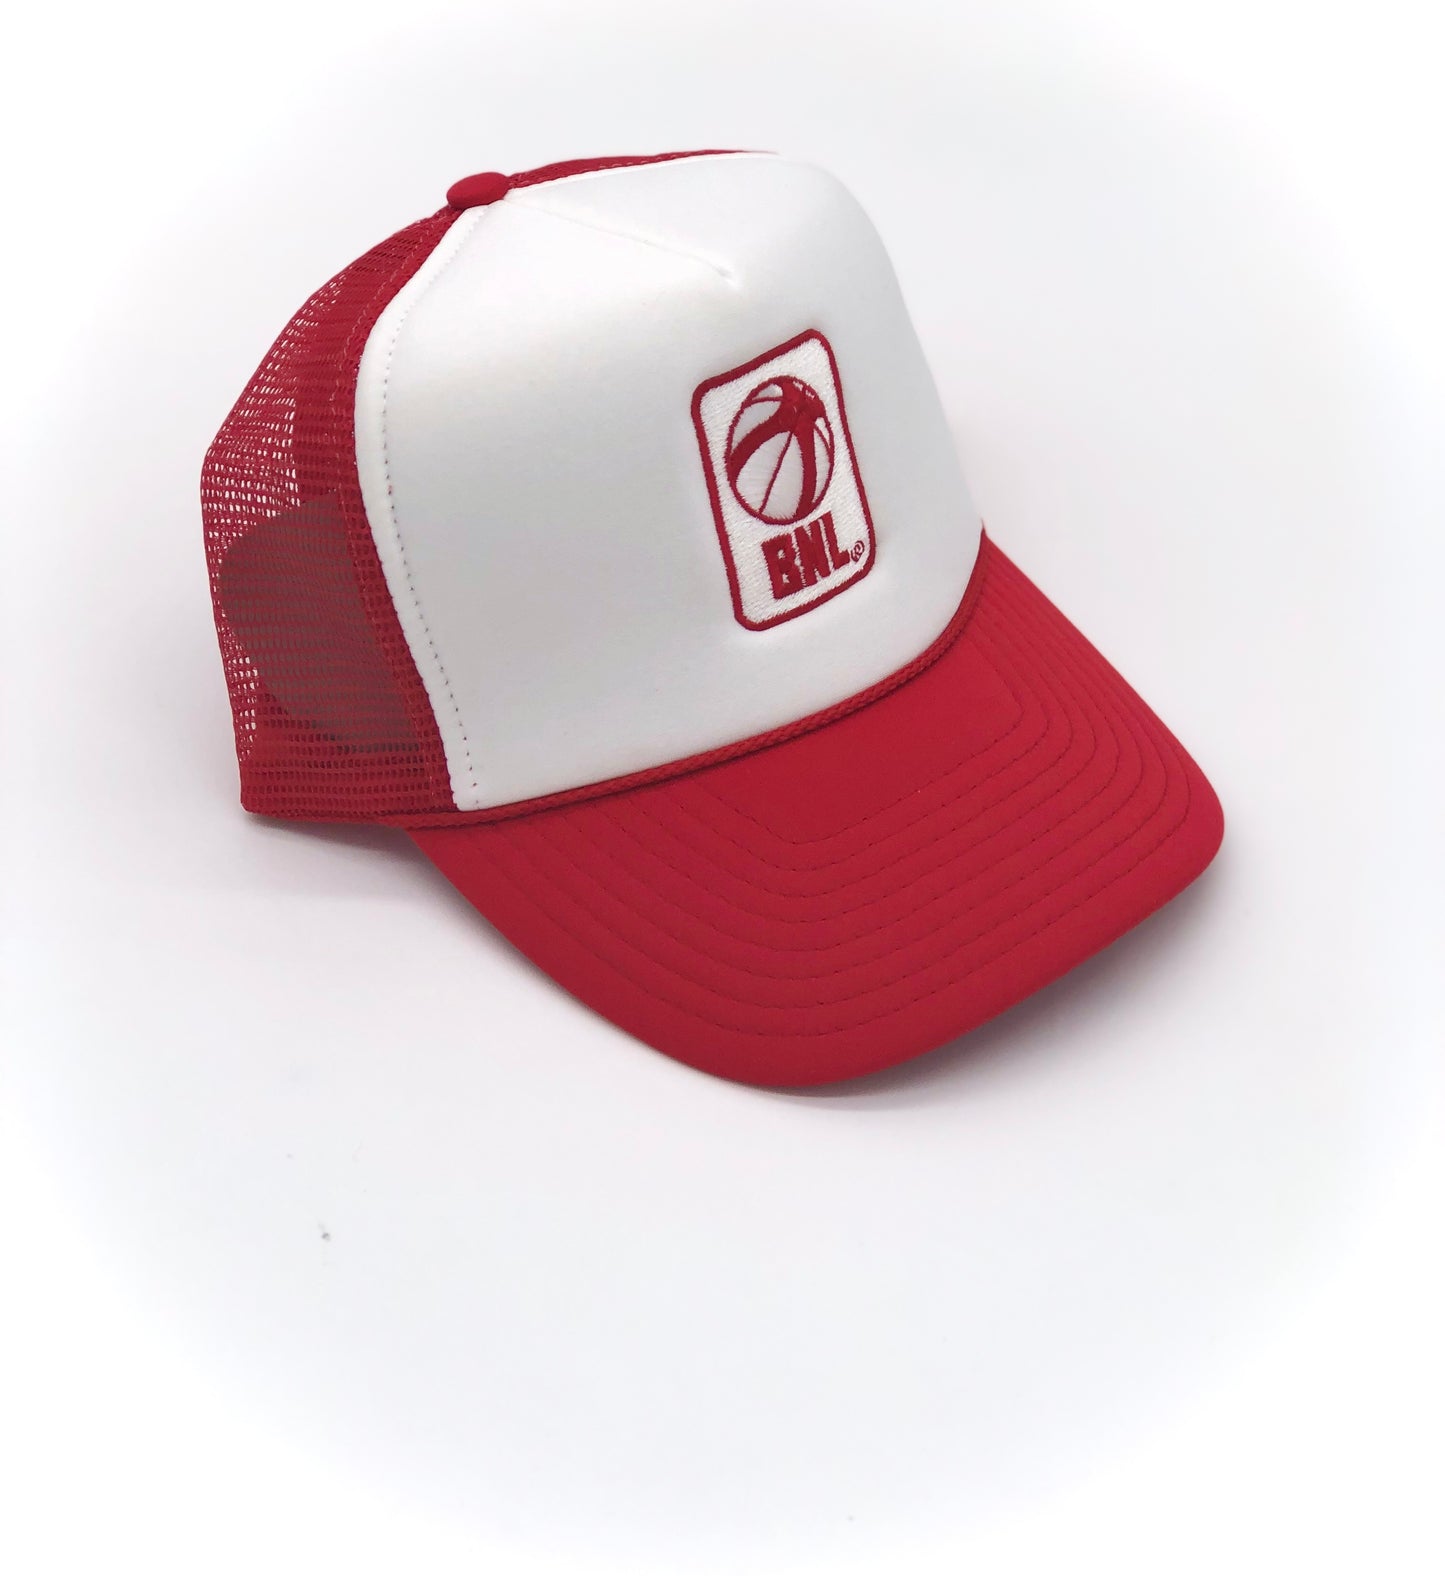 BNL Trucker Hat in Red